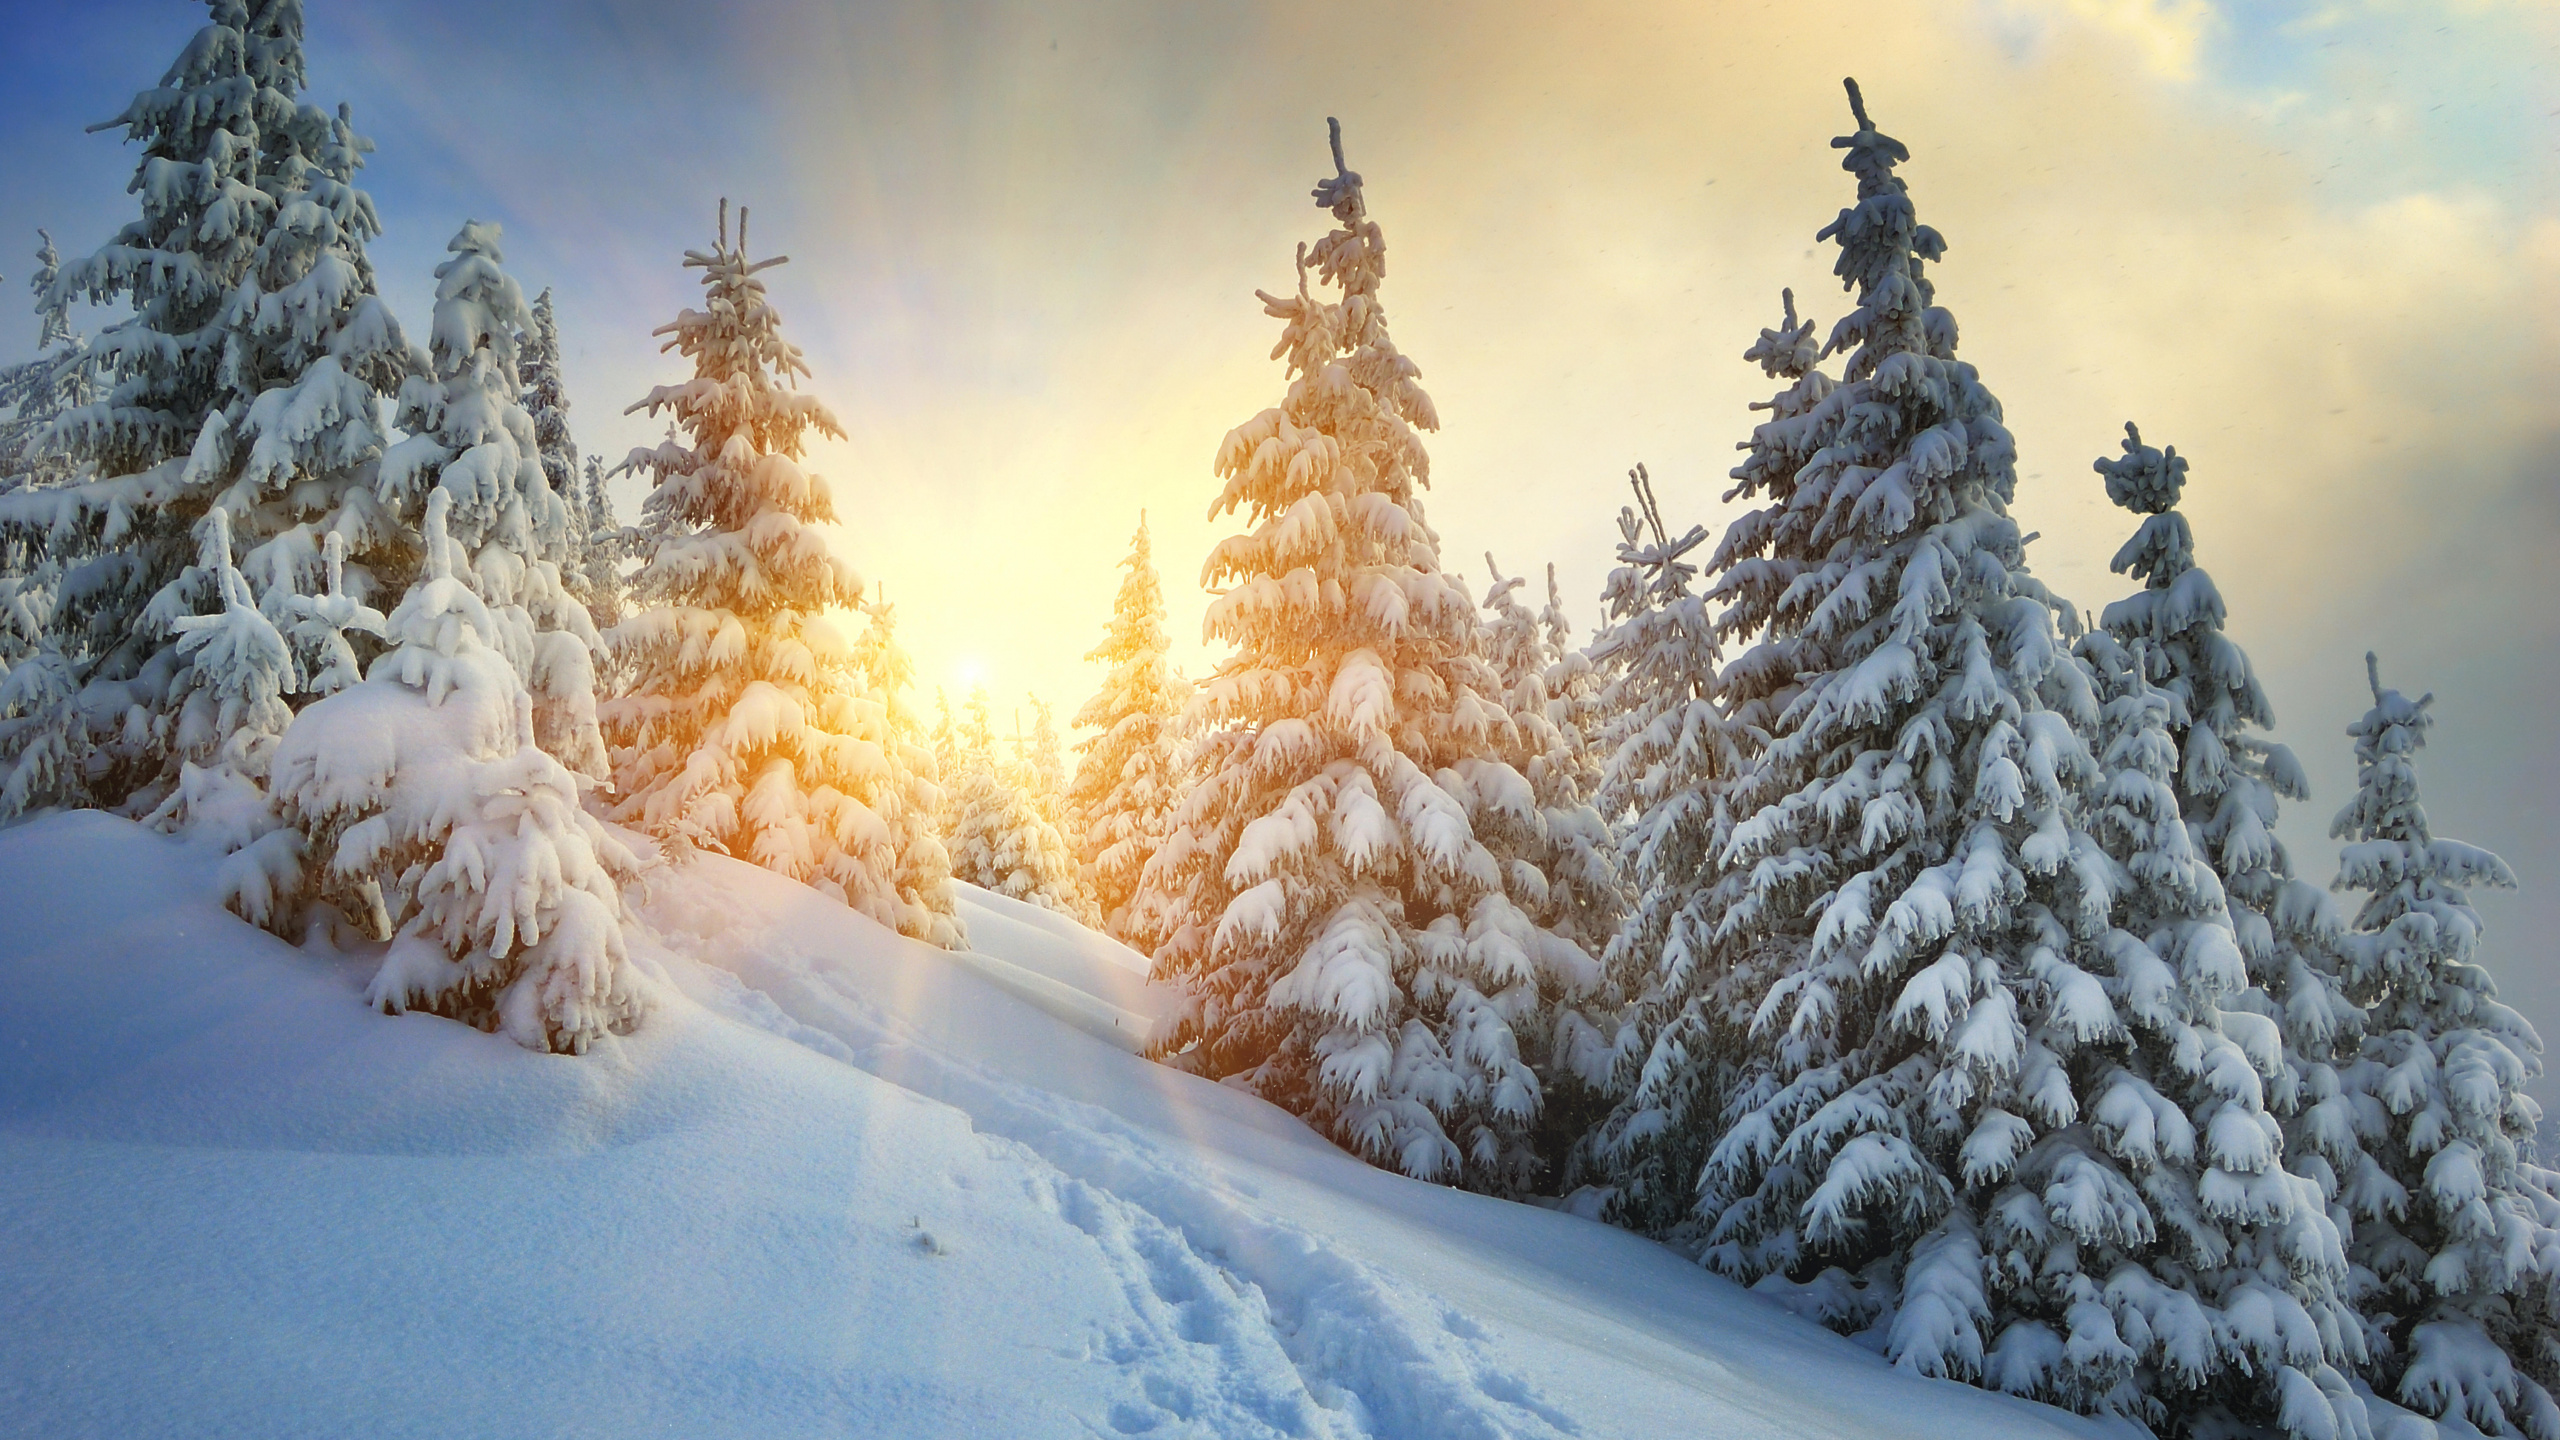 冬天, 冻结, 云杉, 天空, 松的家庭 壁纸 2560x1440 允许